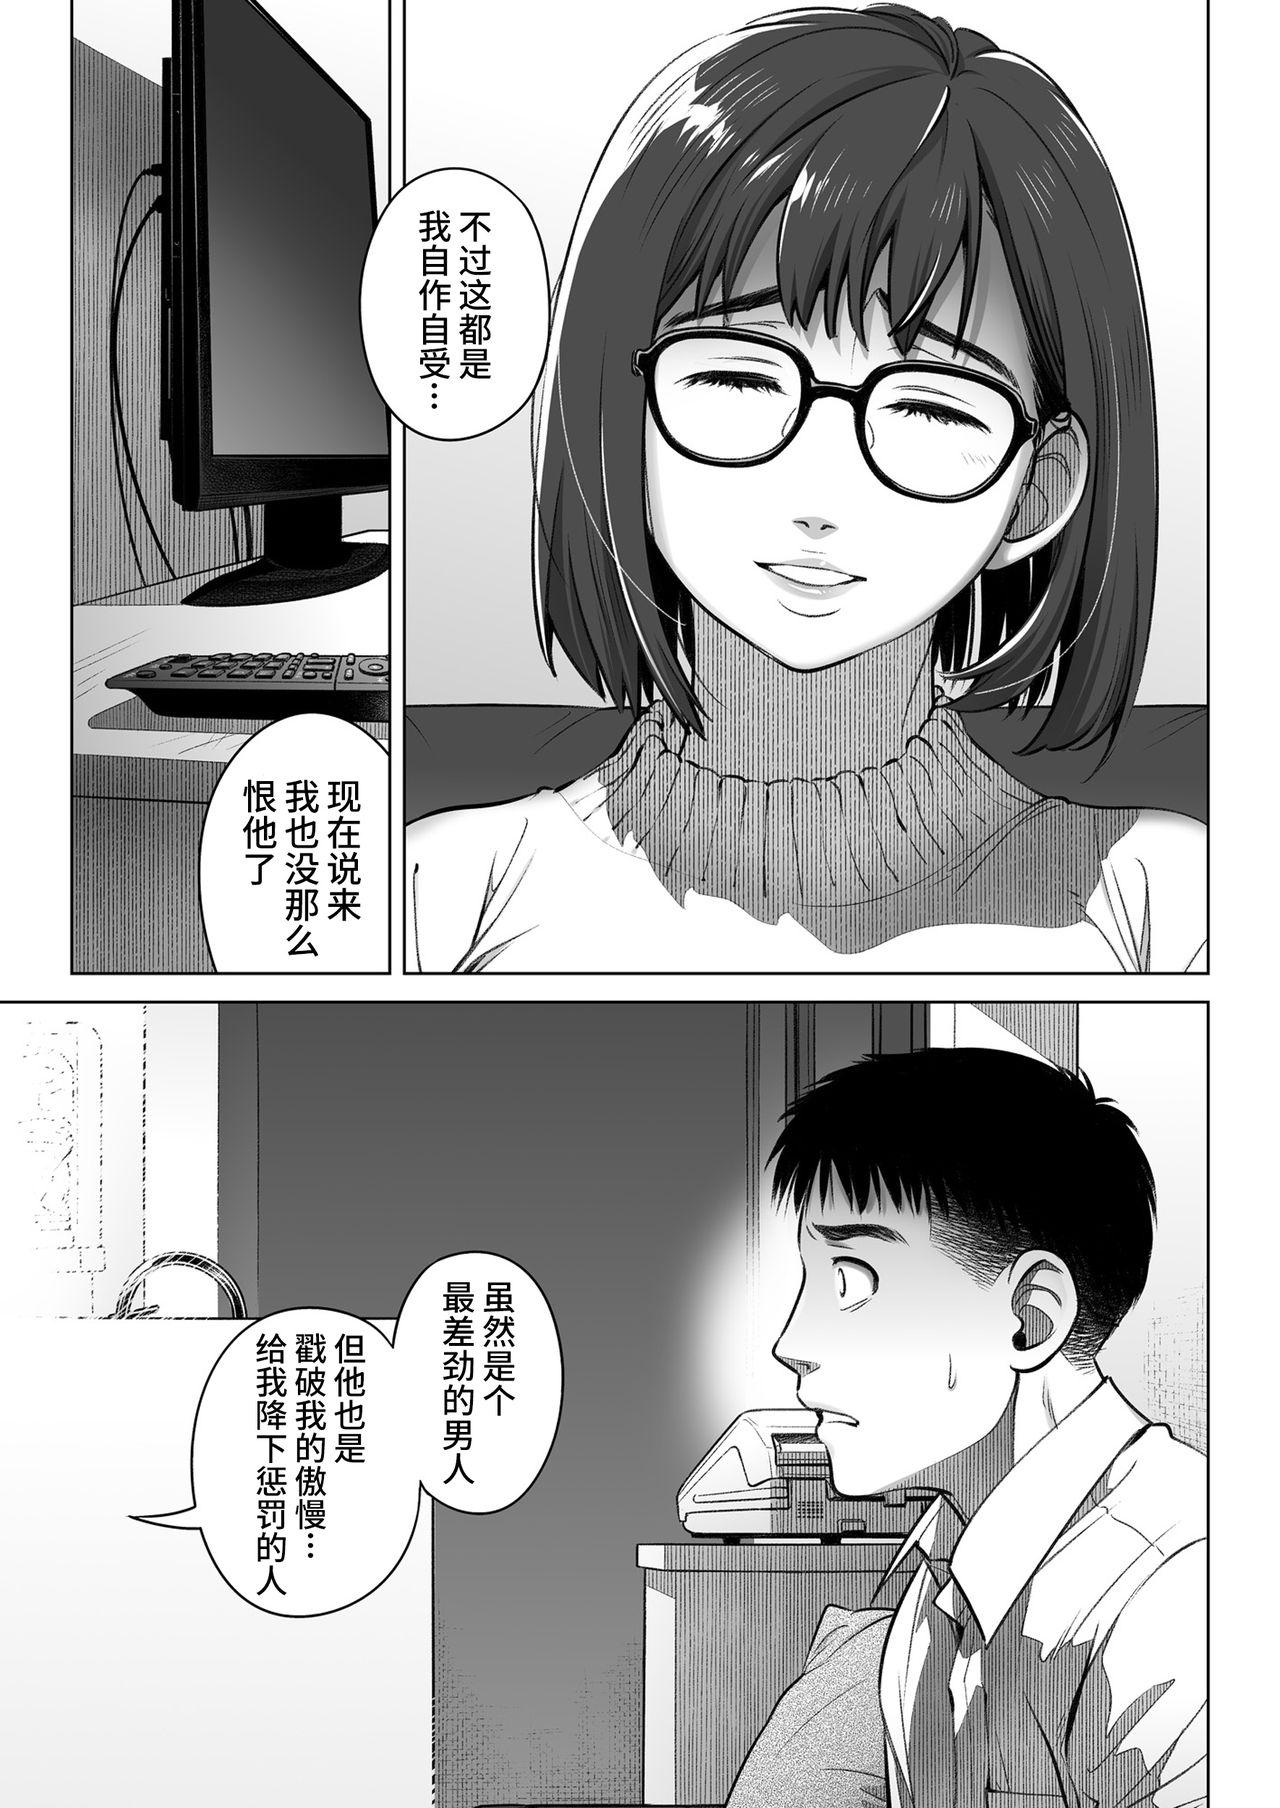 Kurata Akiko no Kokuhaku 2 - Confession of Akiko kurata Epsode 2 | 仓田有稀子的告白 第2话 49